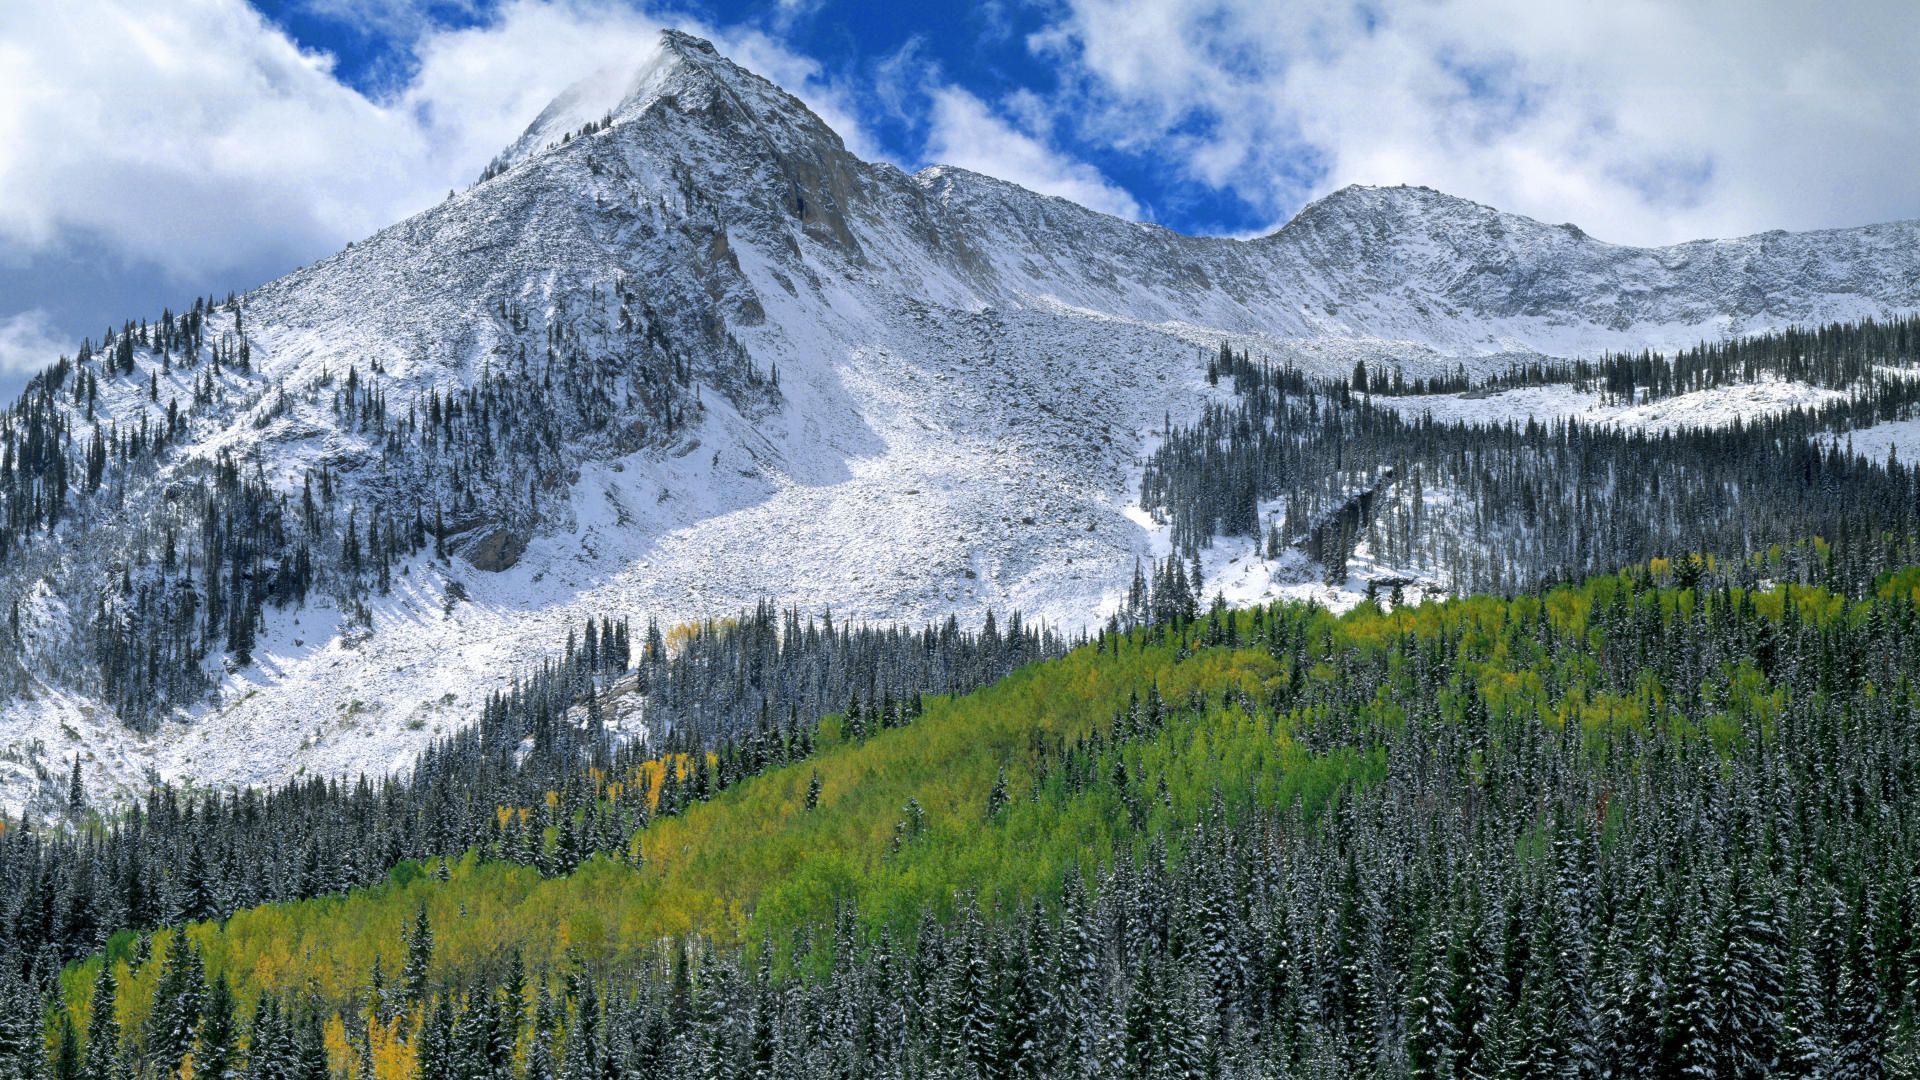 Colorado Snowy Landscape - wallpaper.